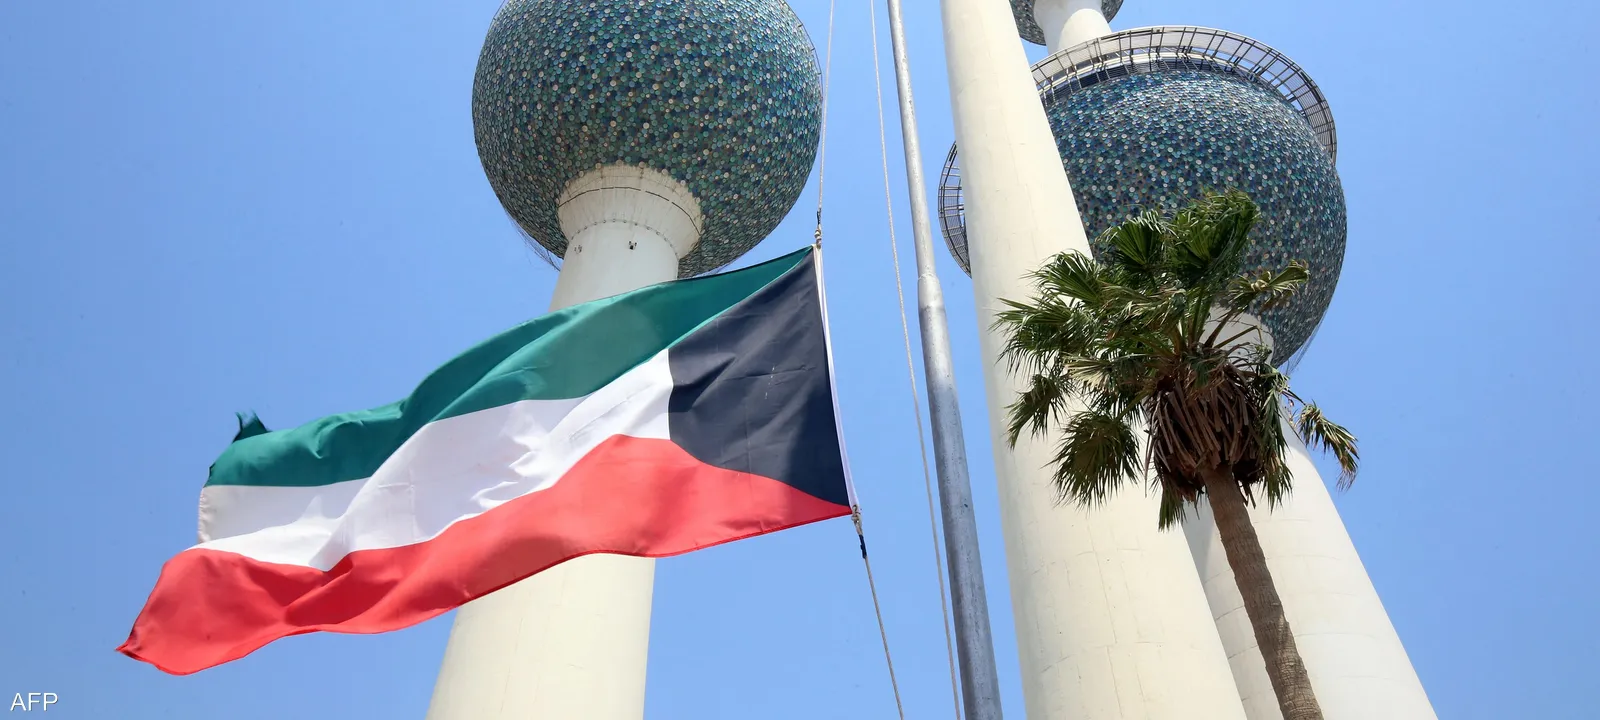 كم راتب دعم العمالة الوطنية في الكويت